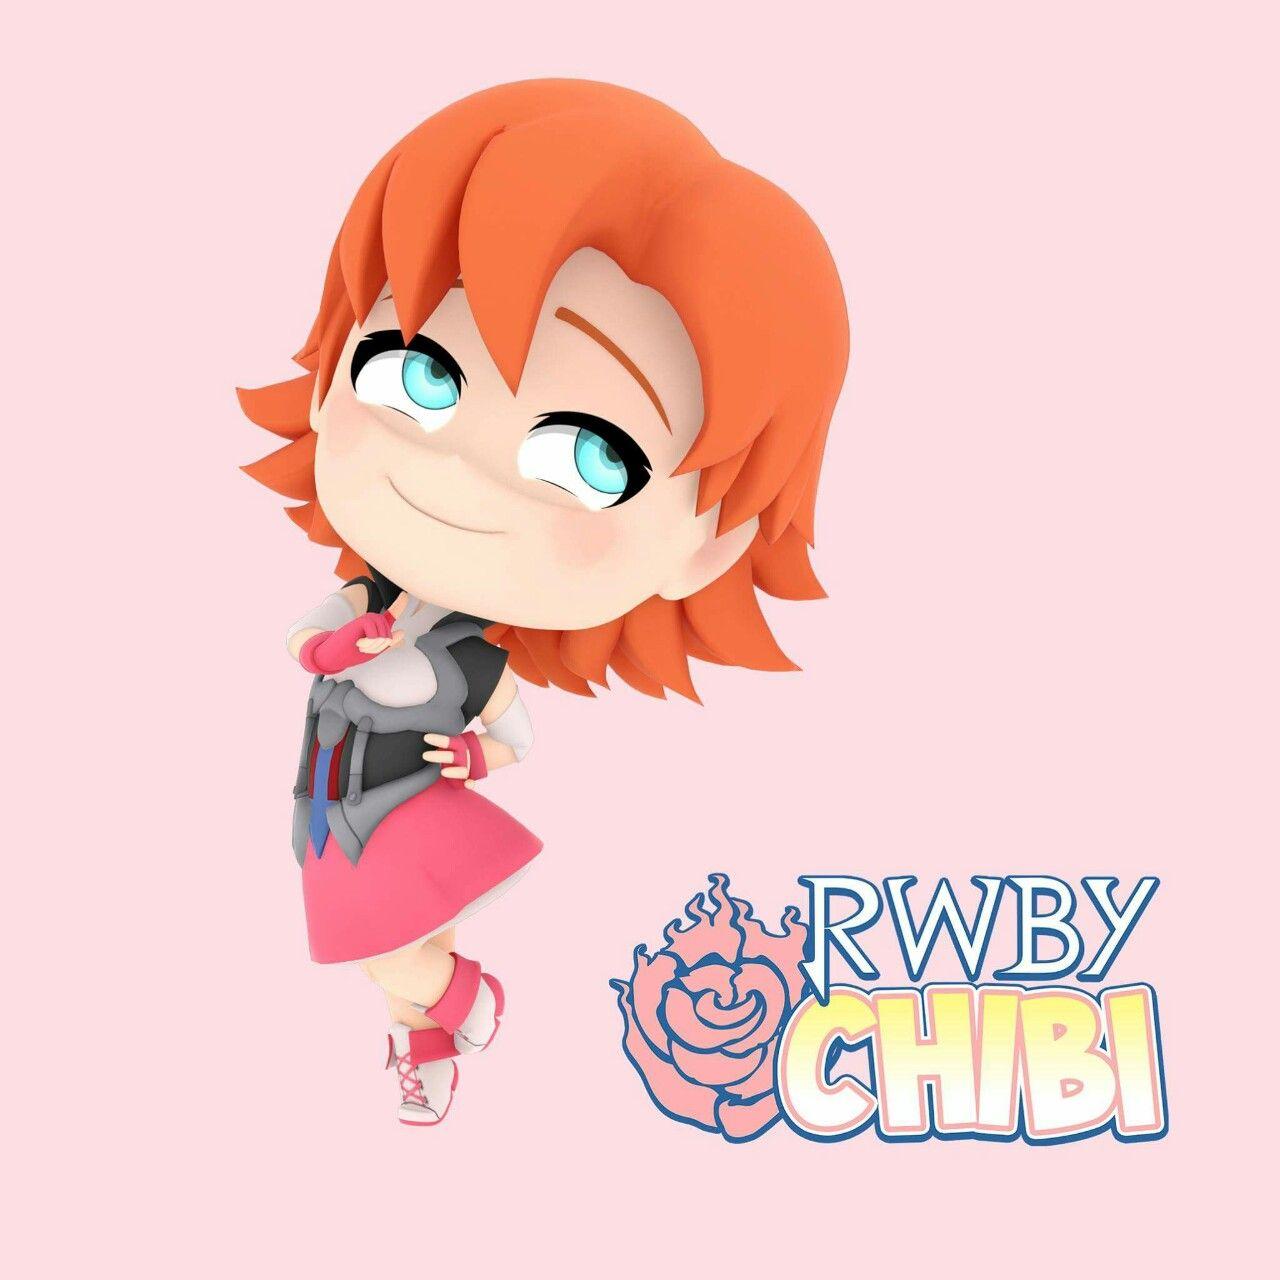 RWBY CHIBI!. RWBY. RWBY, Chibi and Rwby anime